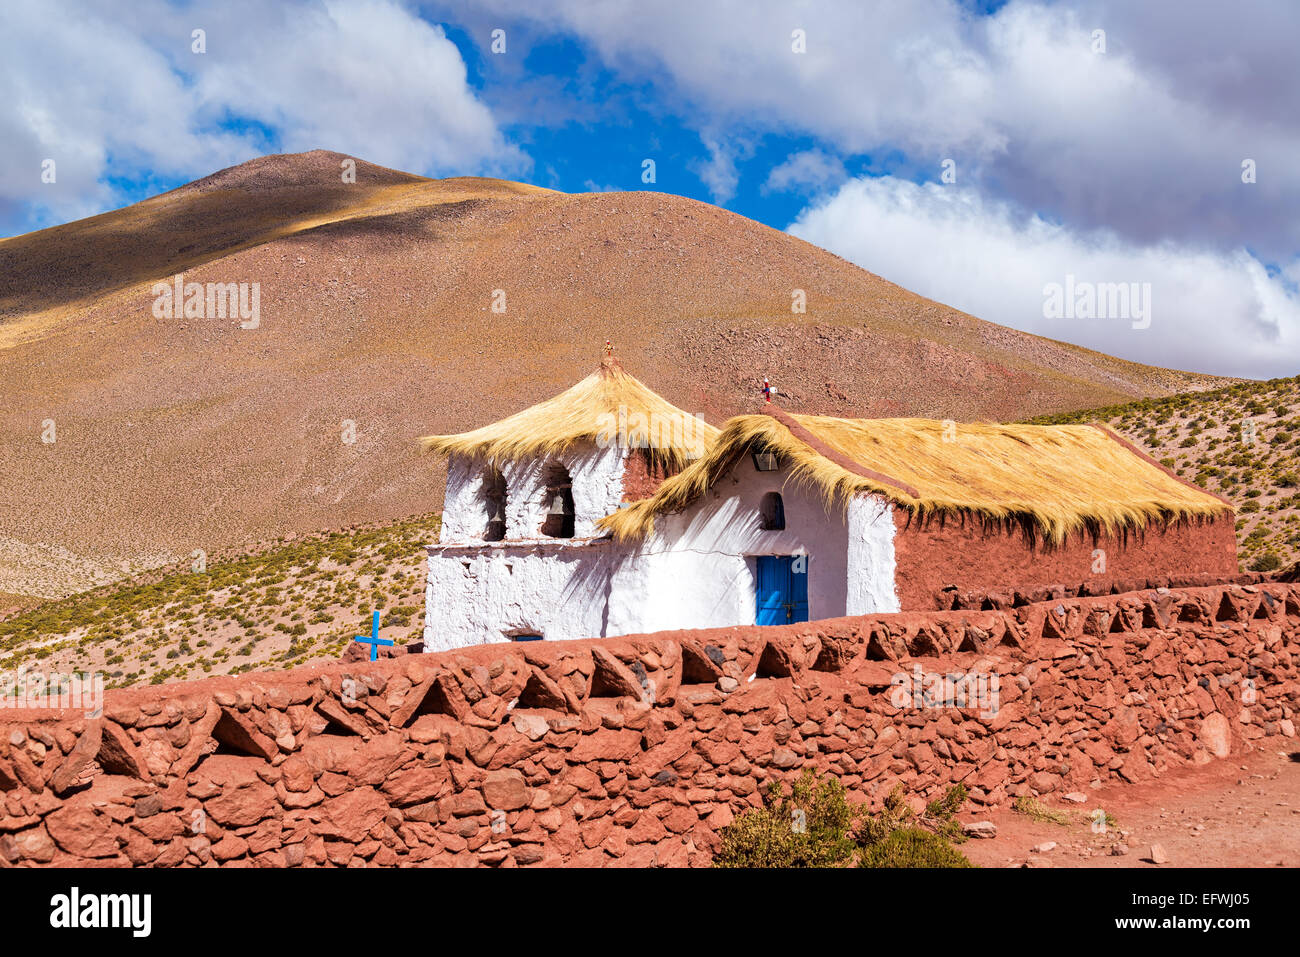 Adobe Machuca church near San Pedro de Atacama, Chile Stock Photo